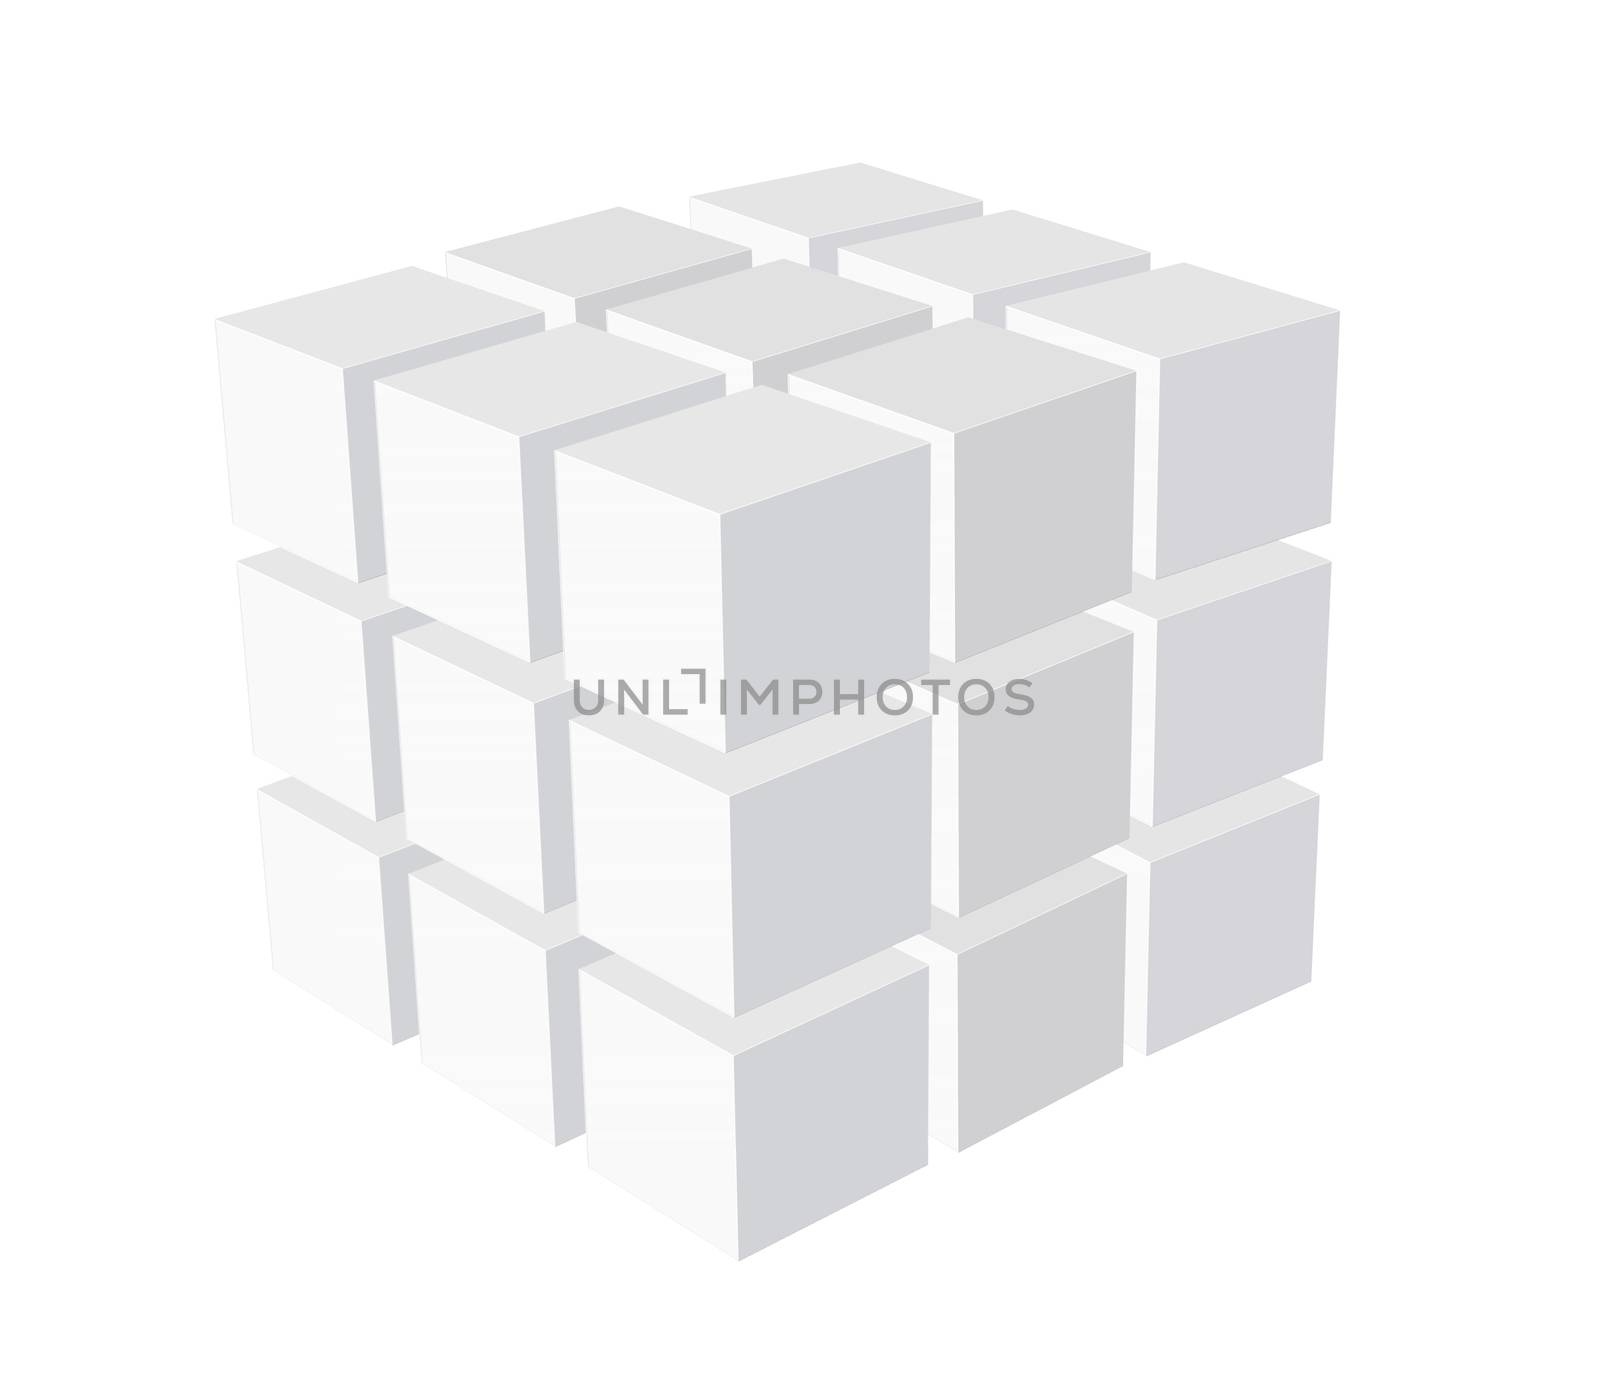 Cube logo business illustration idea by stelian